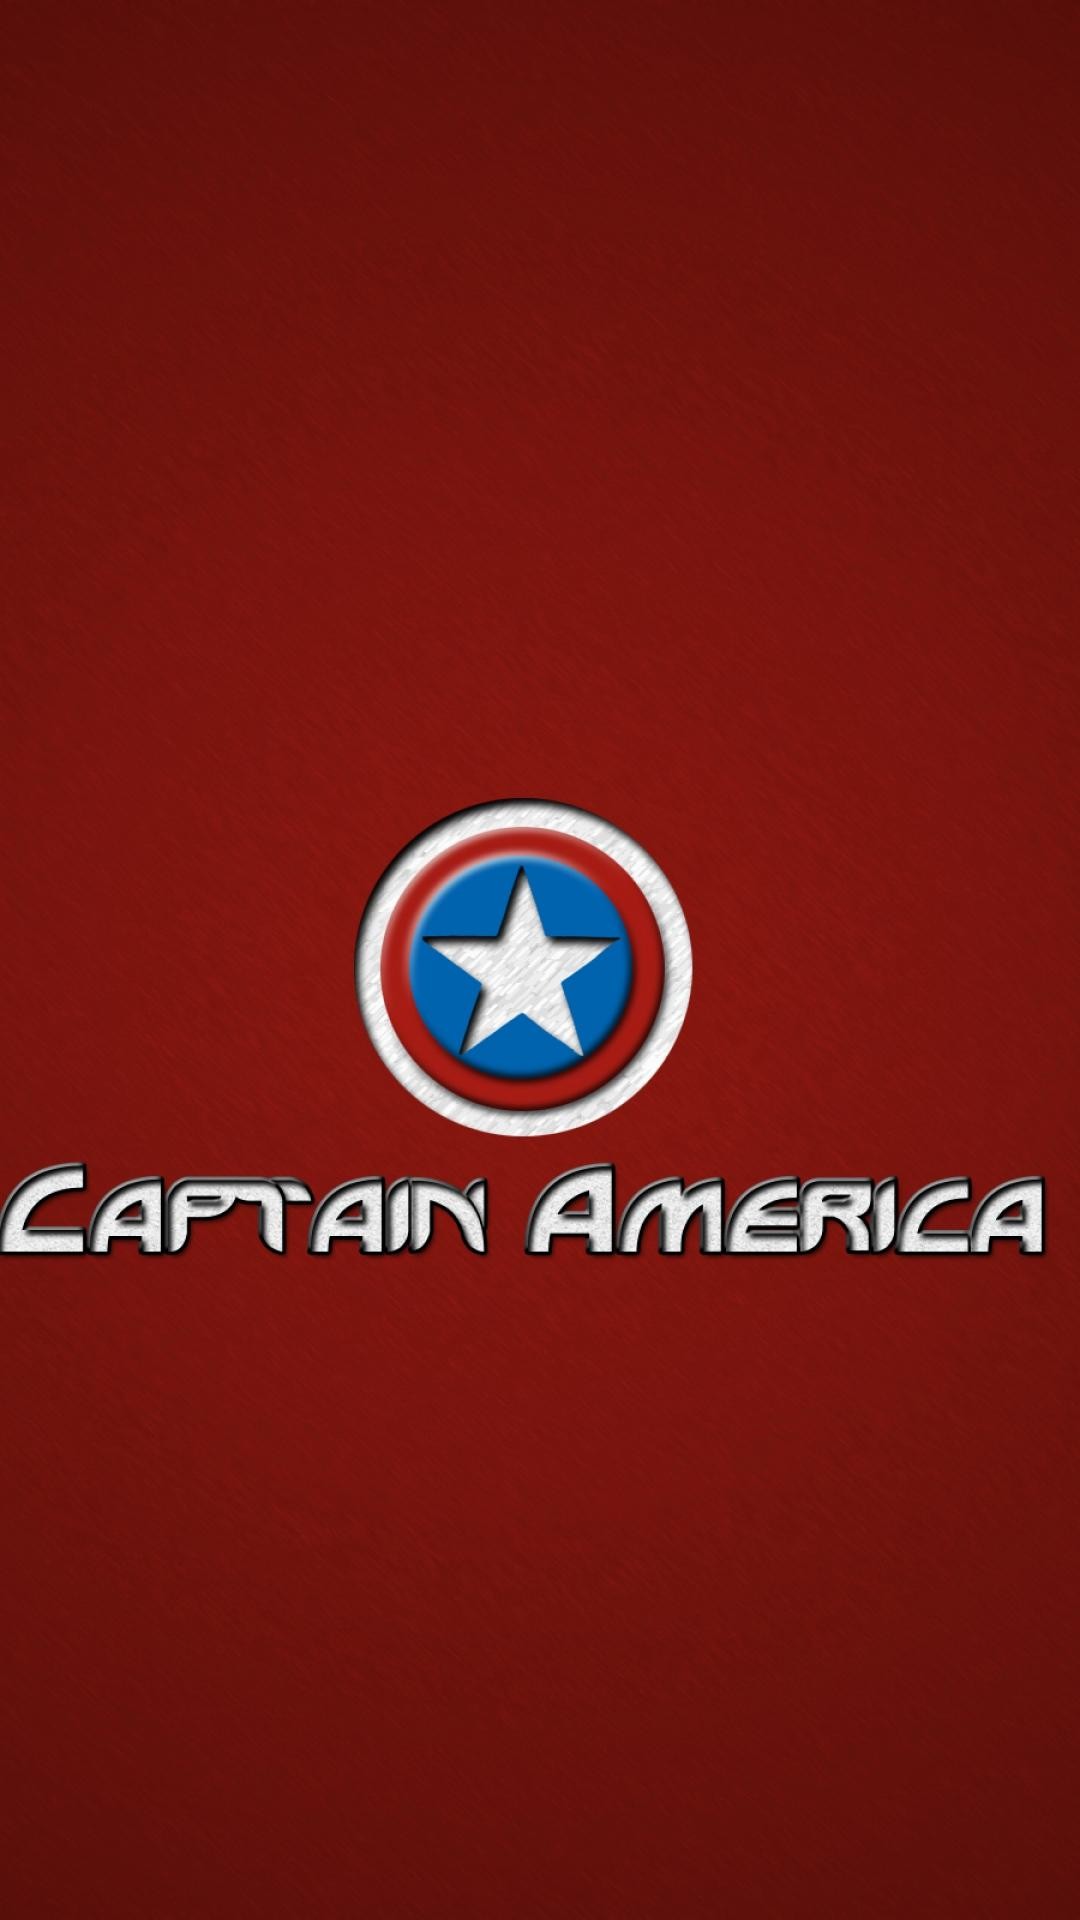 1080x1920 wallpaper.wiki-Captain-America-Logo-Marvel-Hero-Avengers-